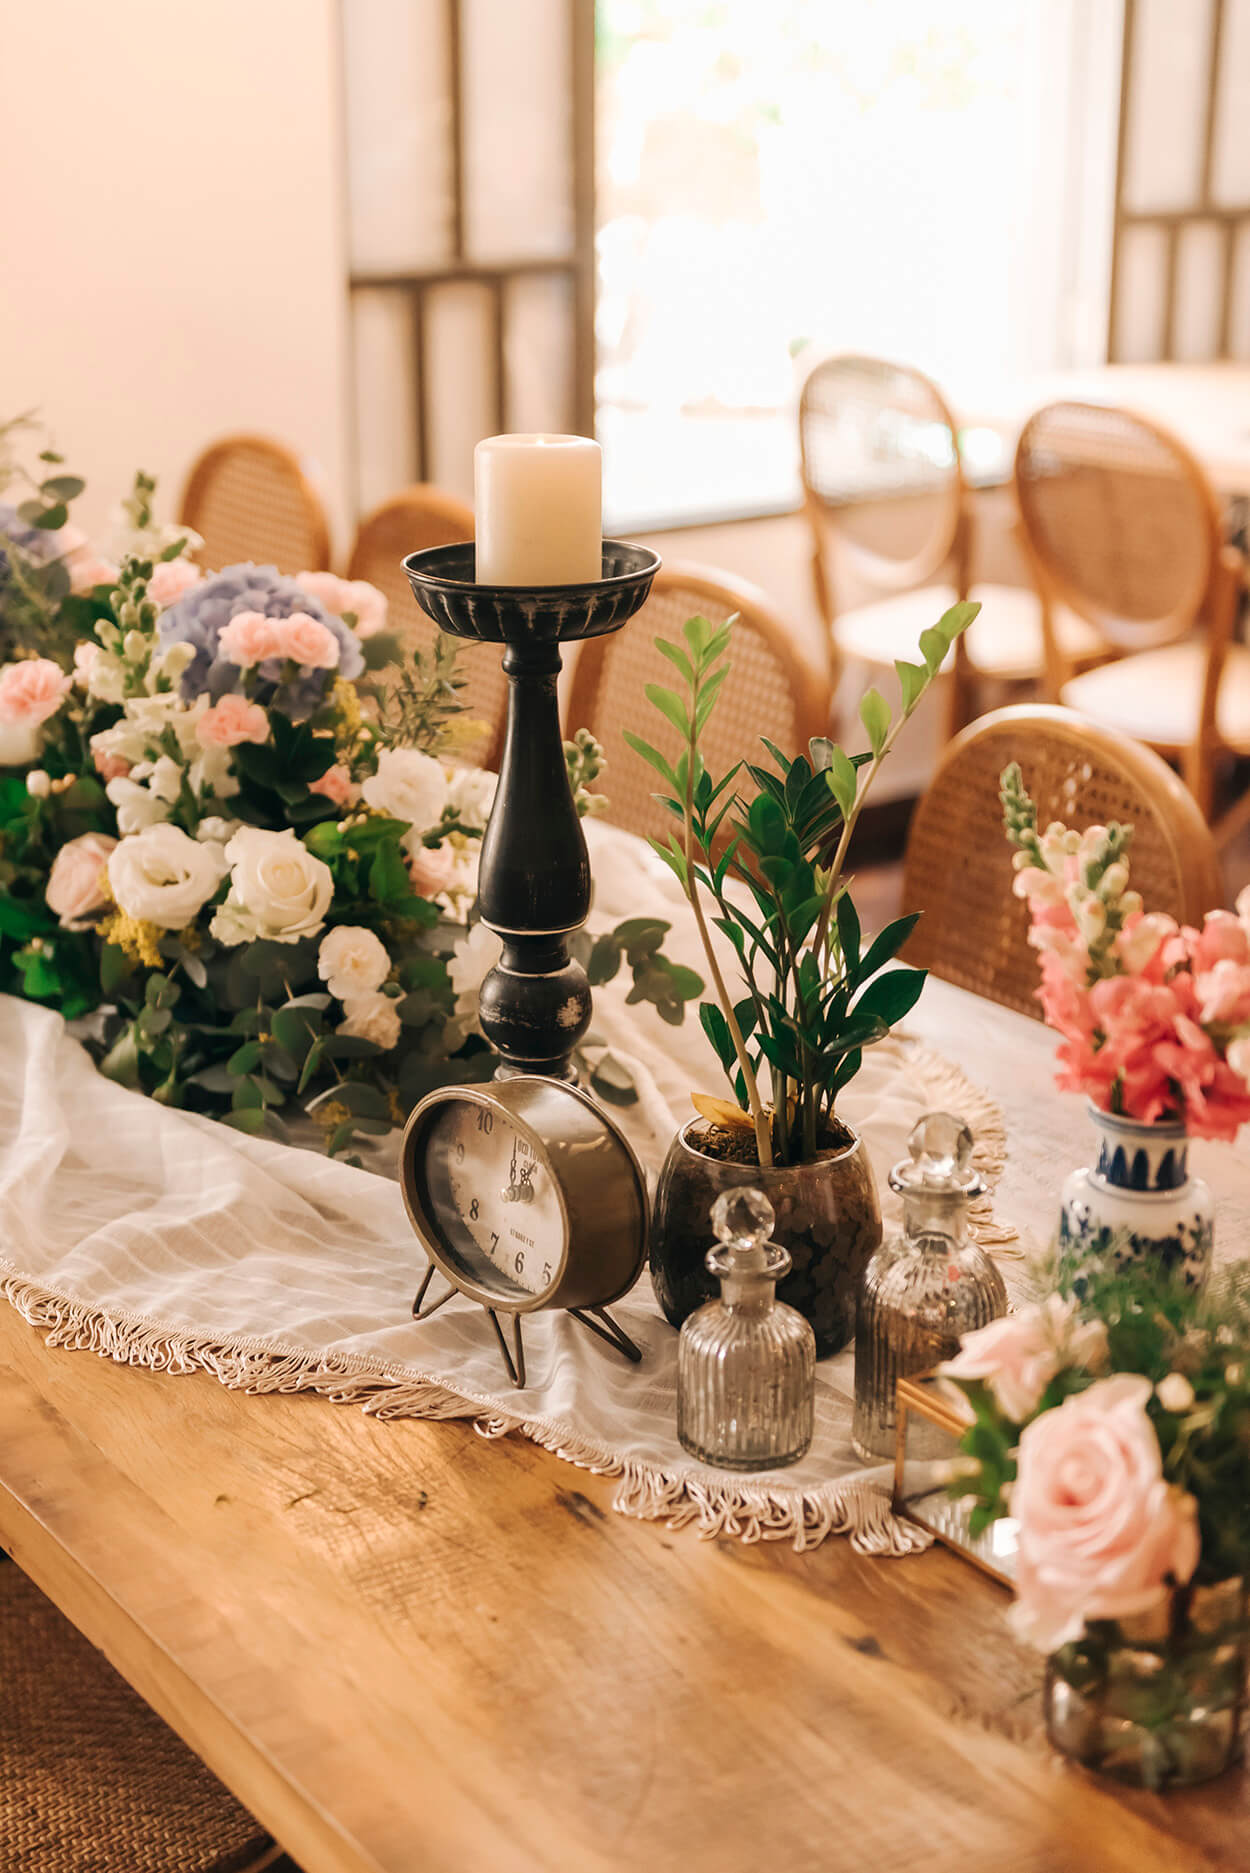 Mesa de madeira com toalha branca no centro castiçal com vela e flores brancas e rosas